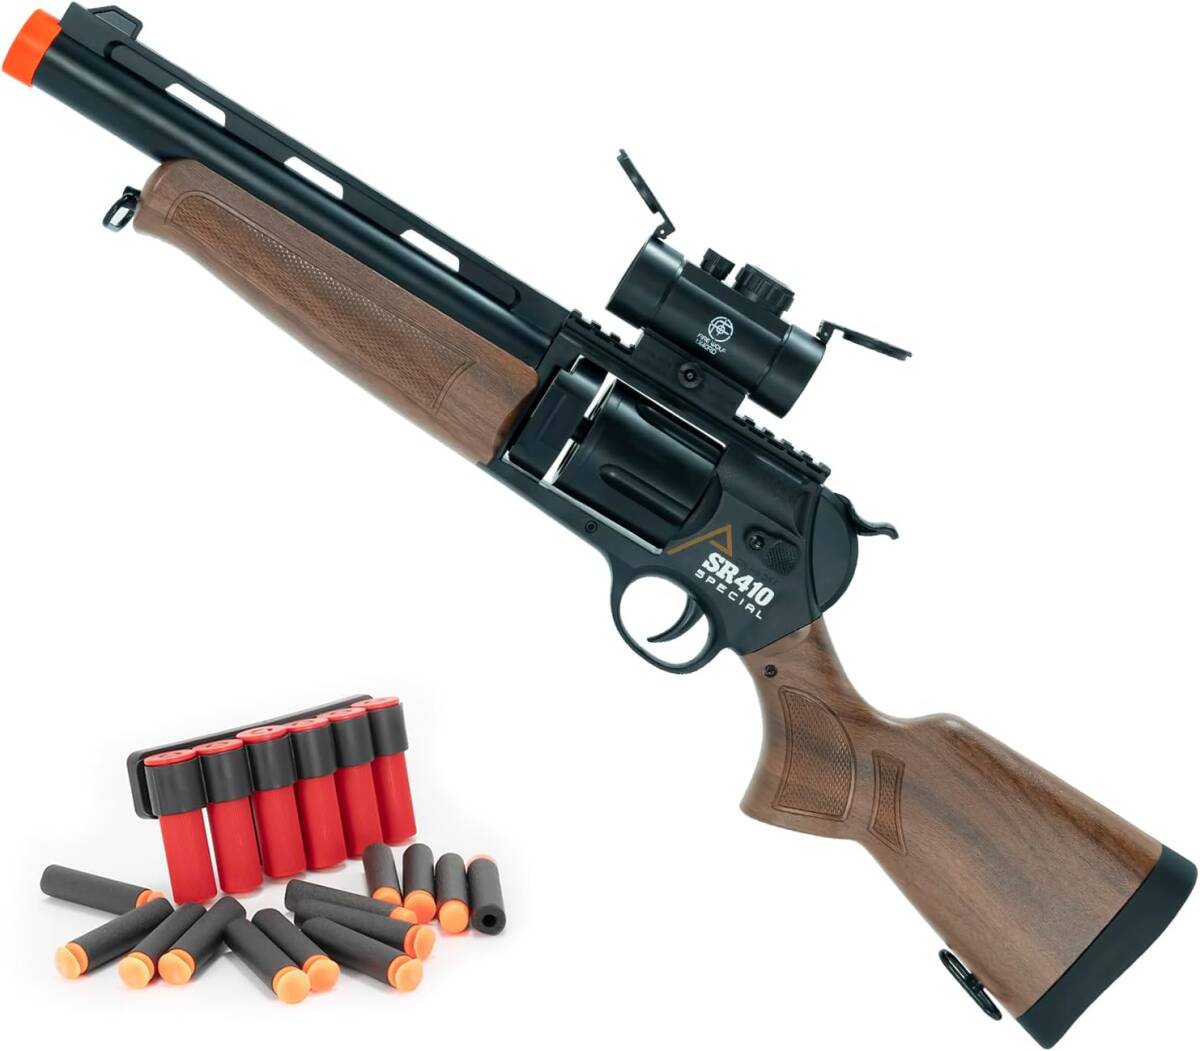 1円 おもちゃ銃 おもちゃの銃 SR410 排莢式 ショットガン トイガン モデルガン スポンジ銃 スポンジ弾 (木目)の画像6